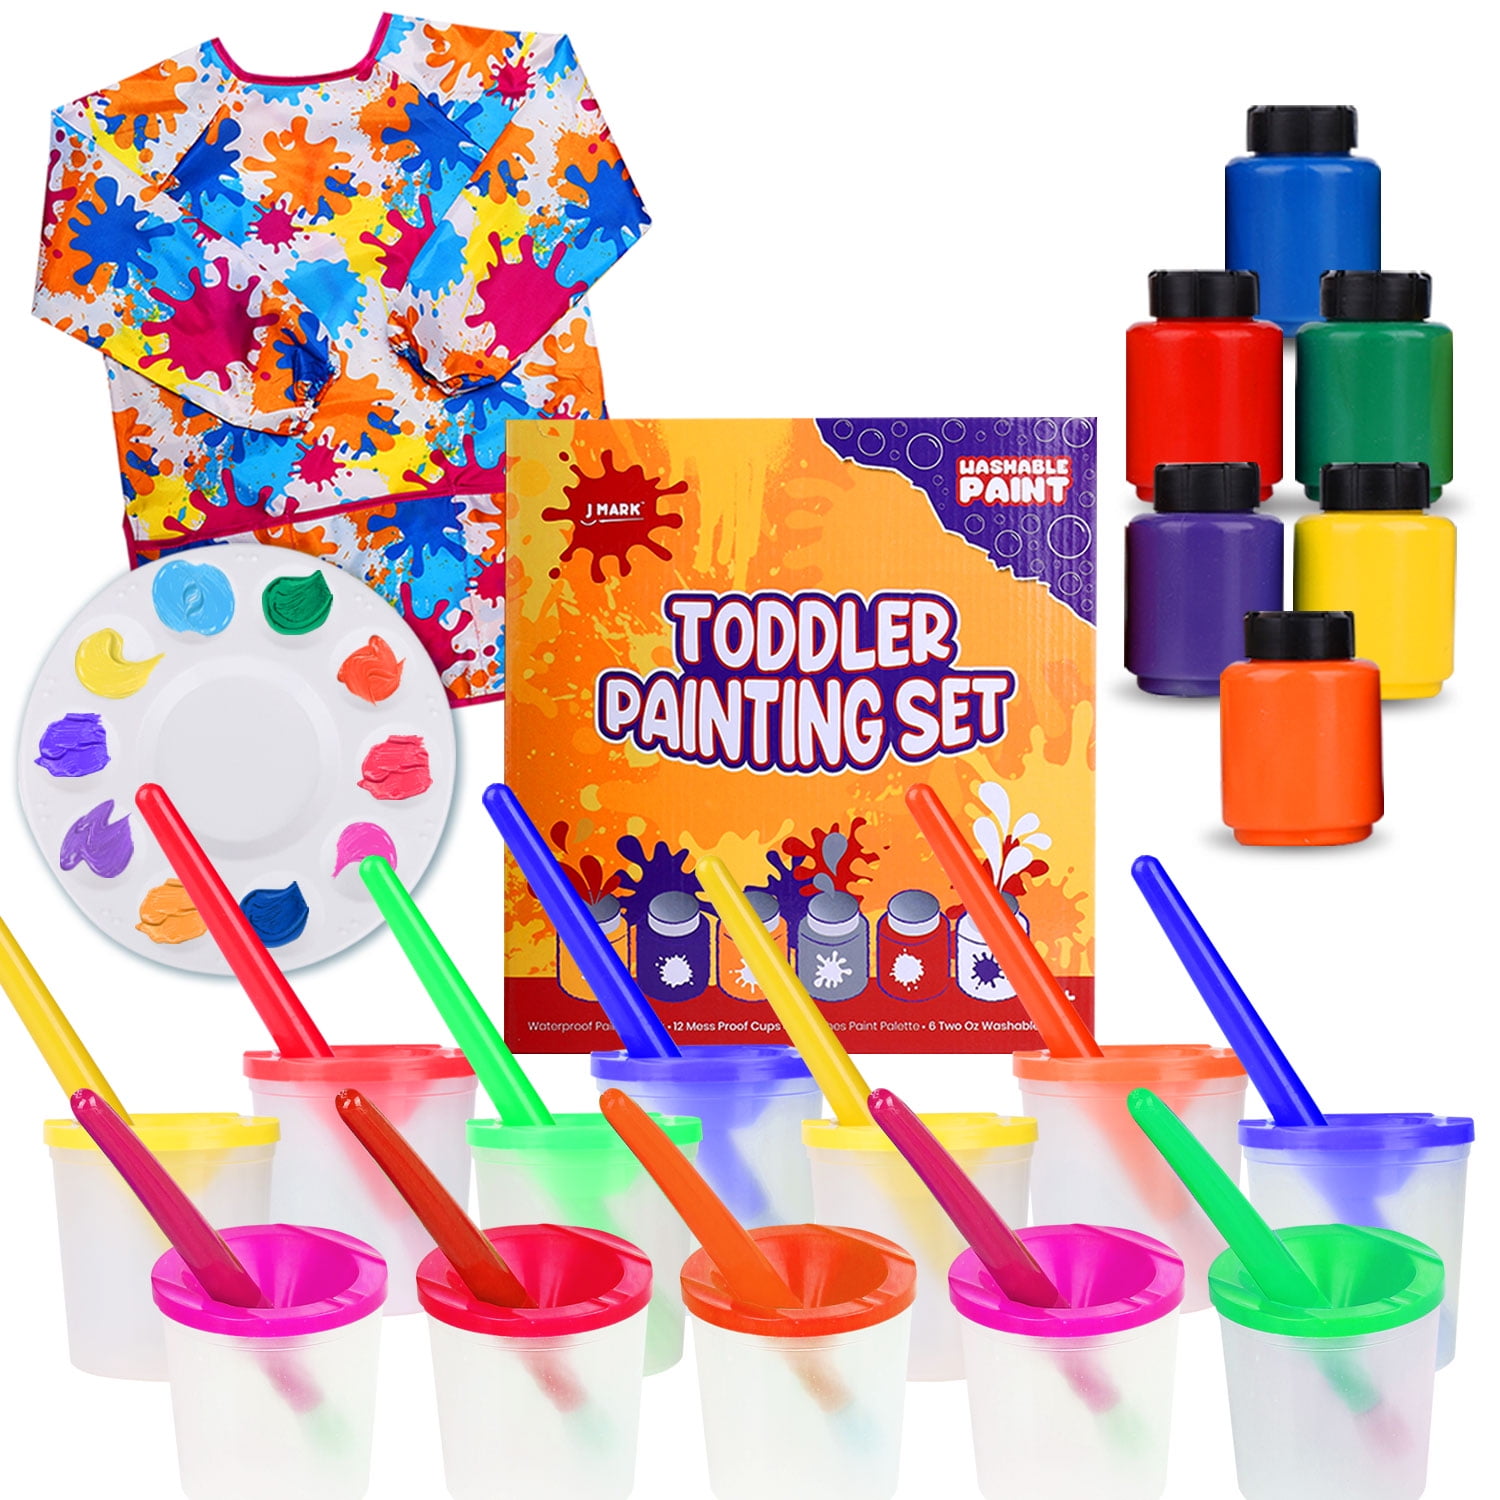 Washable Tempera Kids Paint Set – Spill Proof Paint Cups, Paint